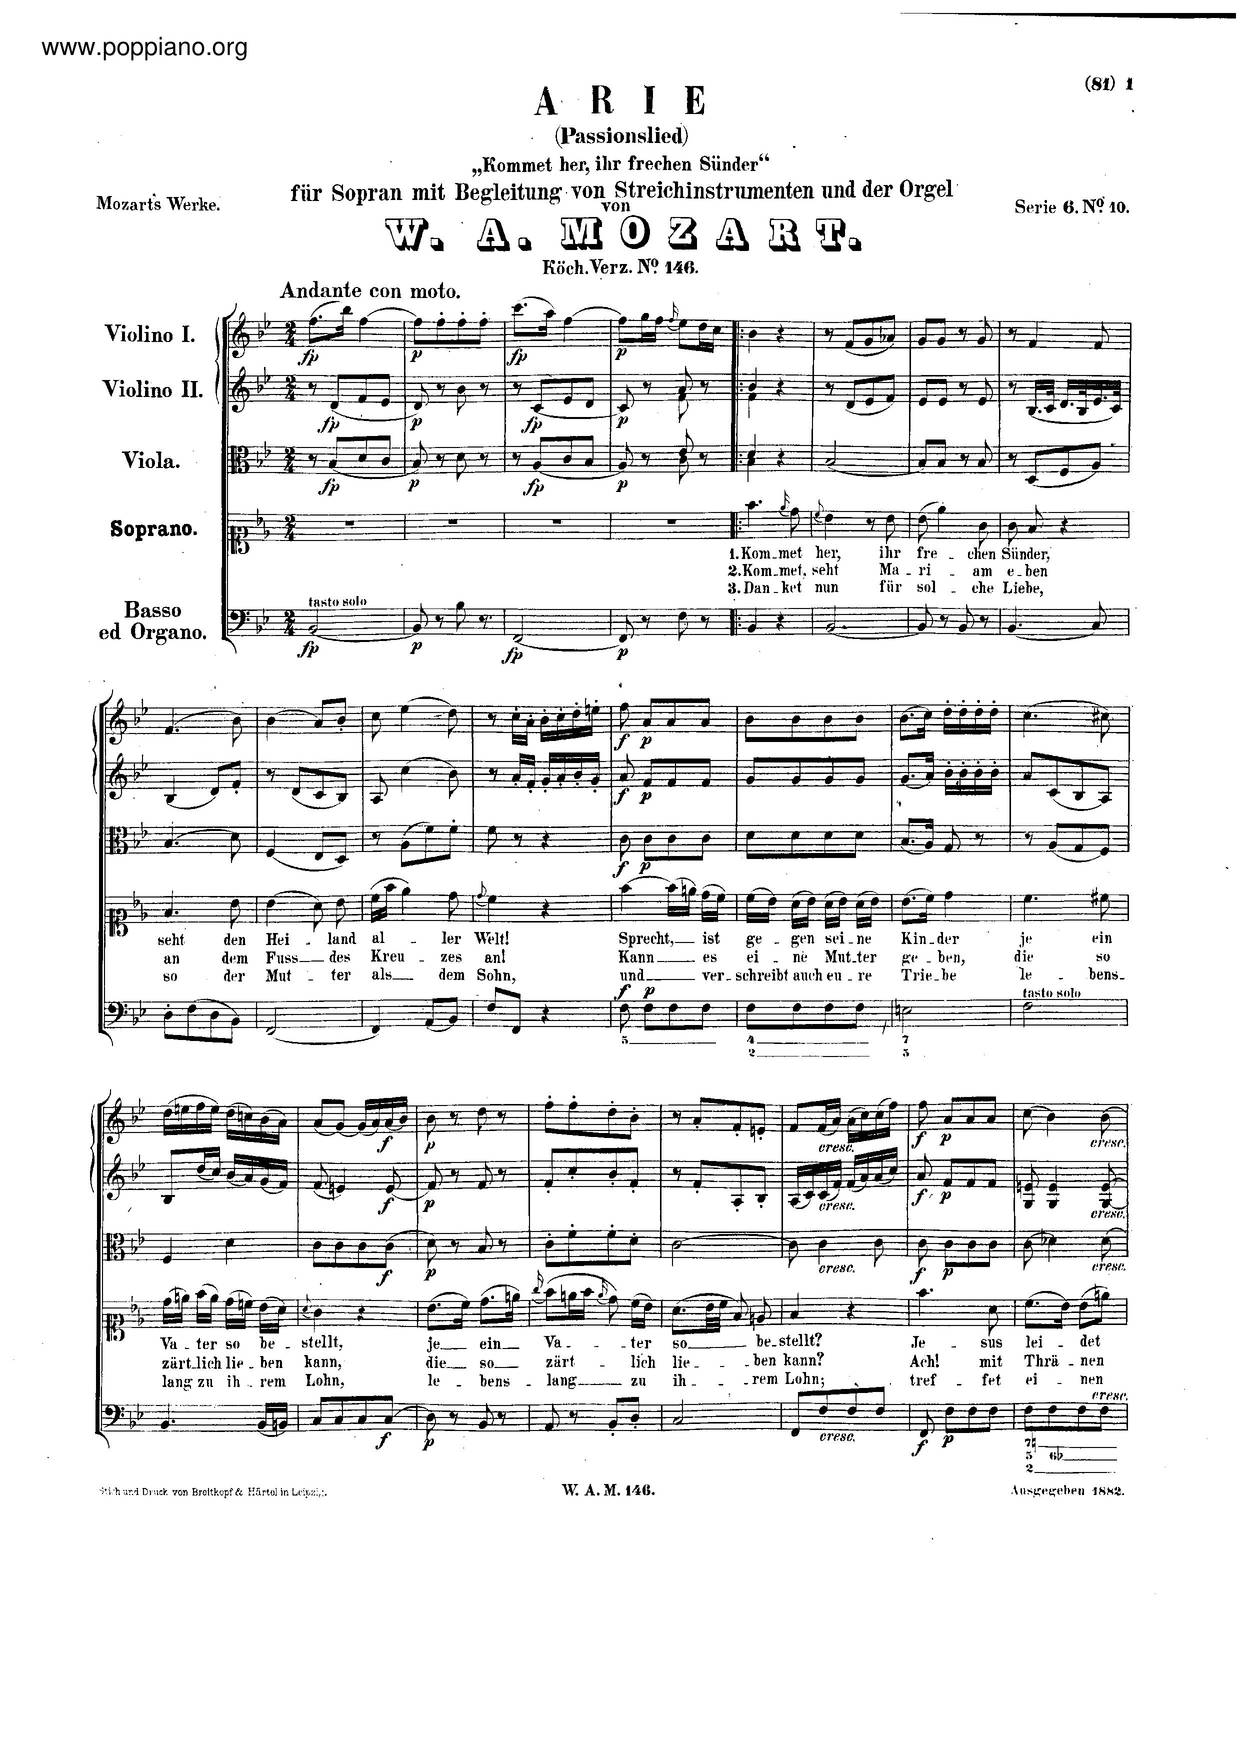 Kommet Her, Ihr Frechen Sünder, K. 146/317Bピアノ譜